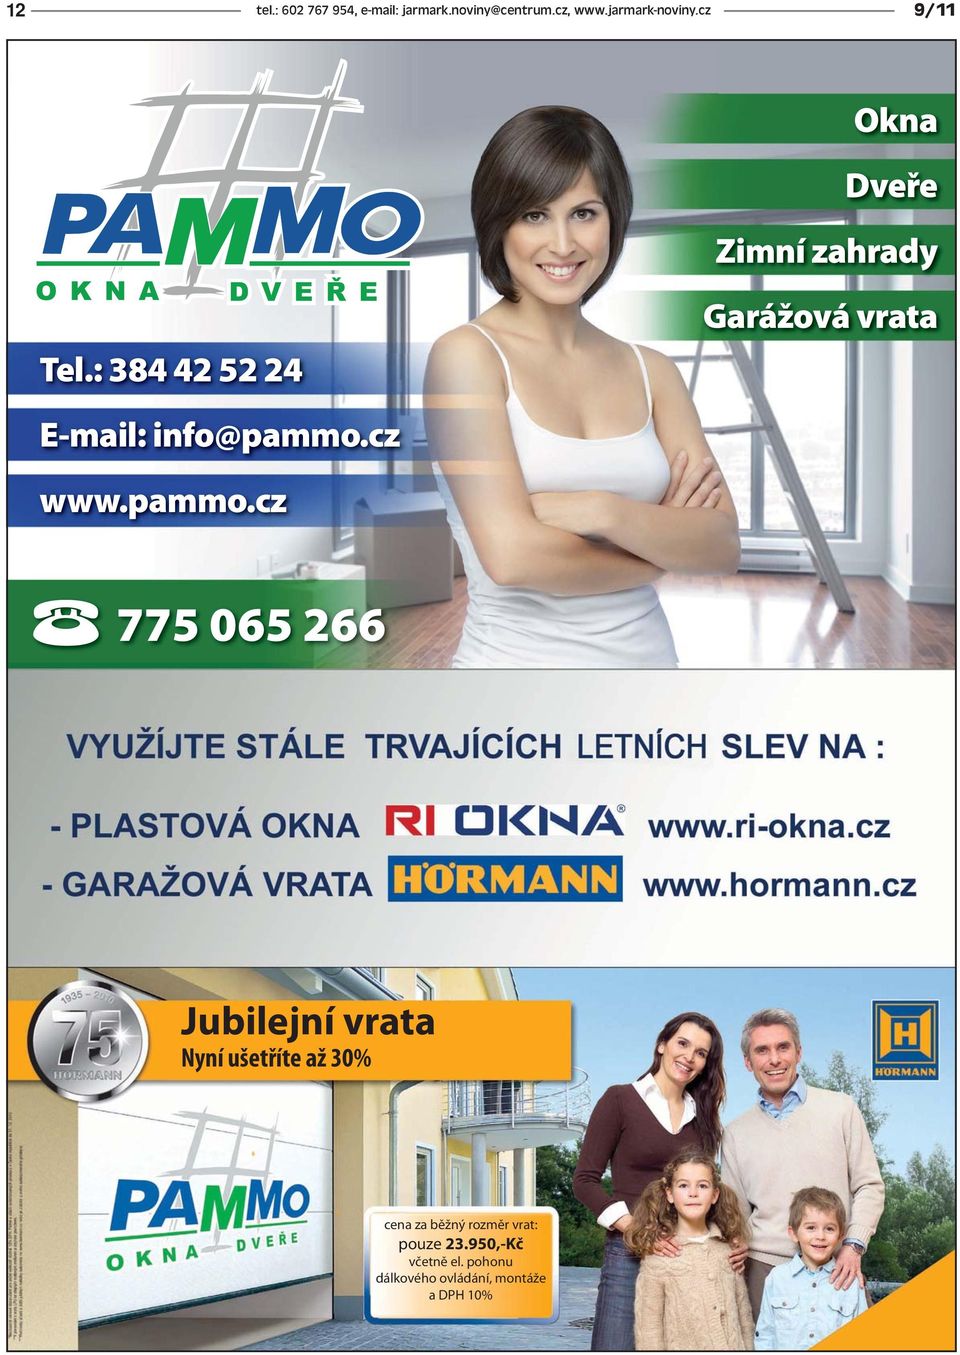 cz www.pammo.